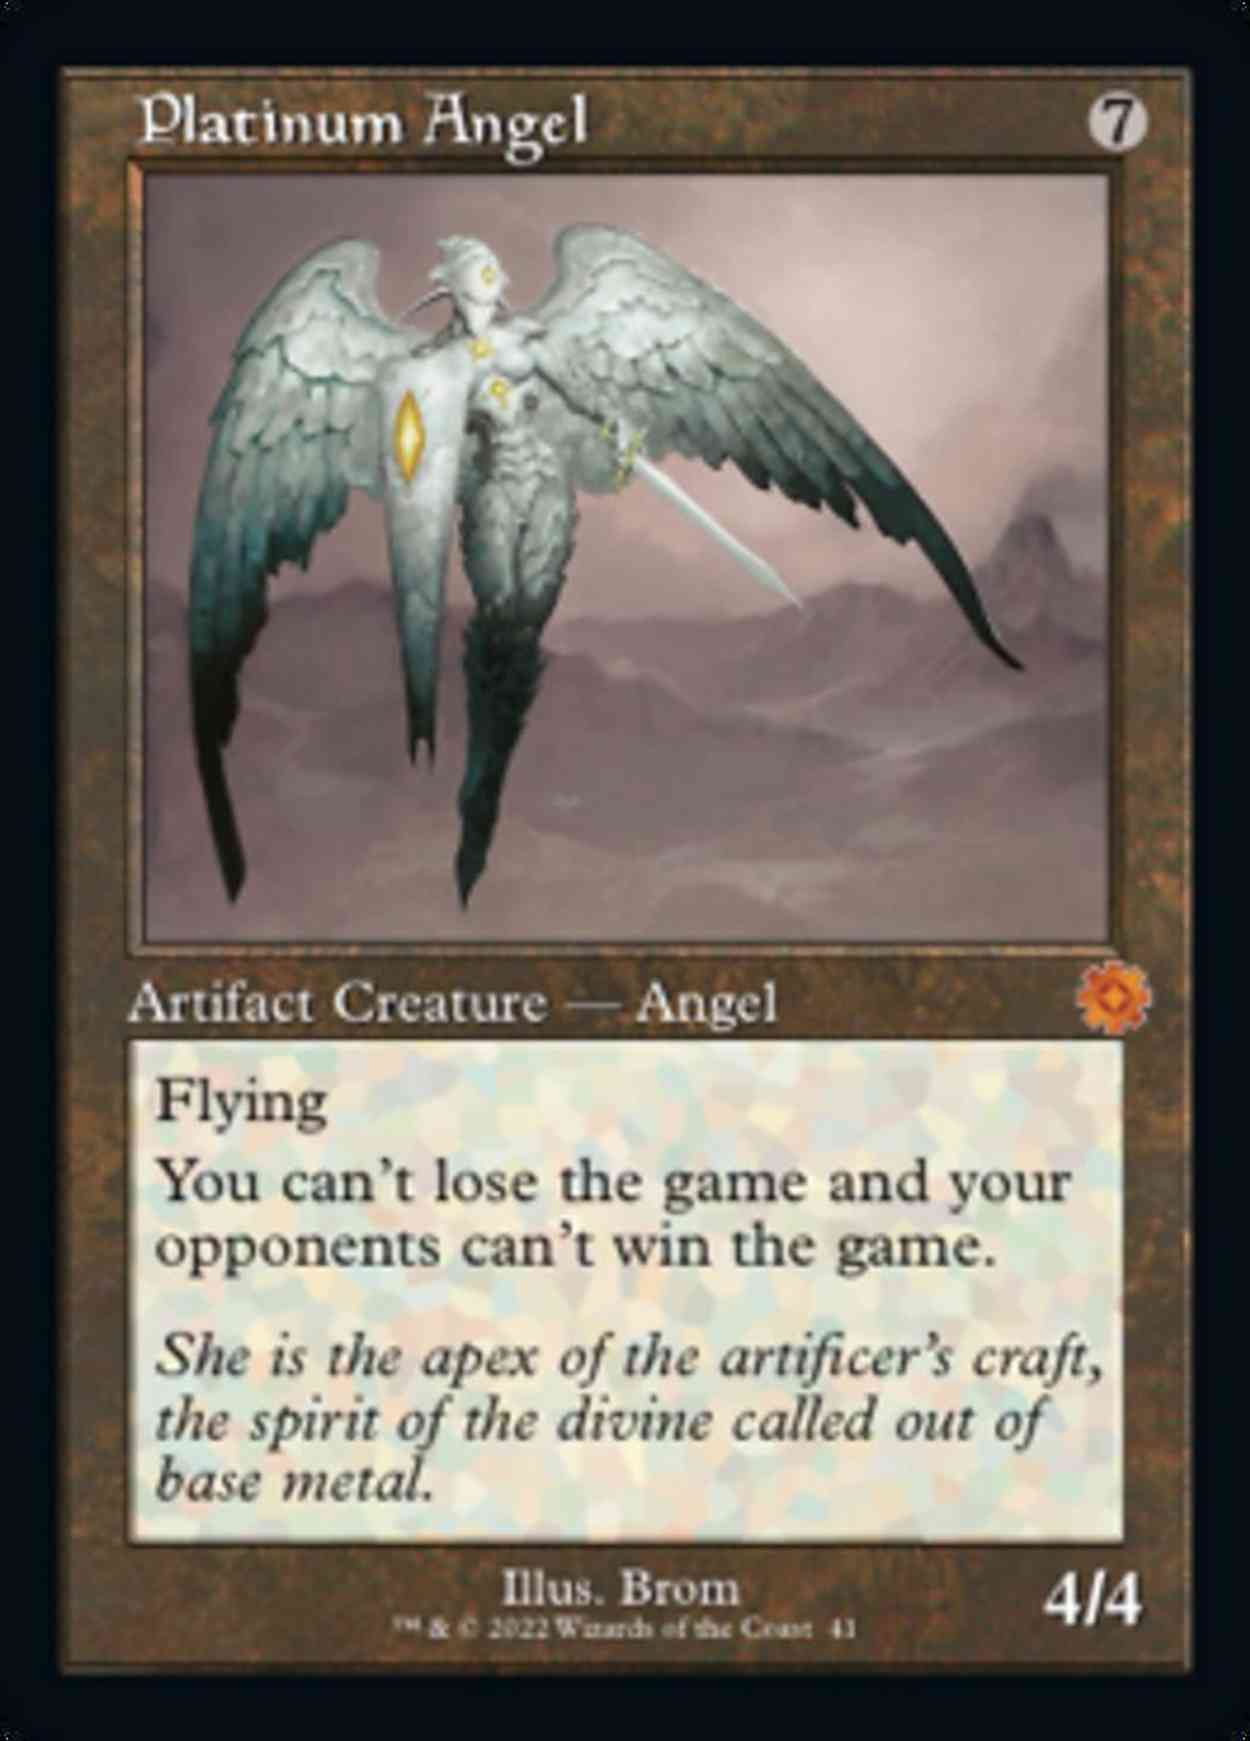 Platinum Angel magic card front